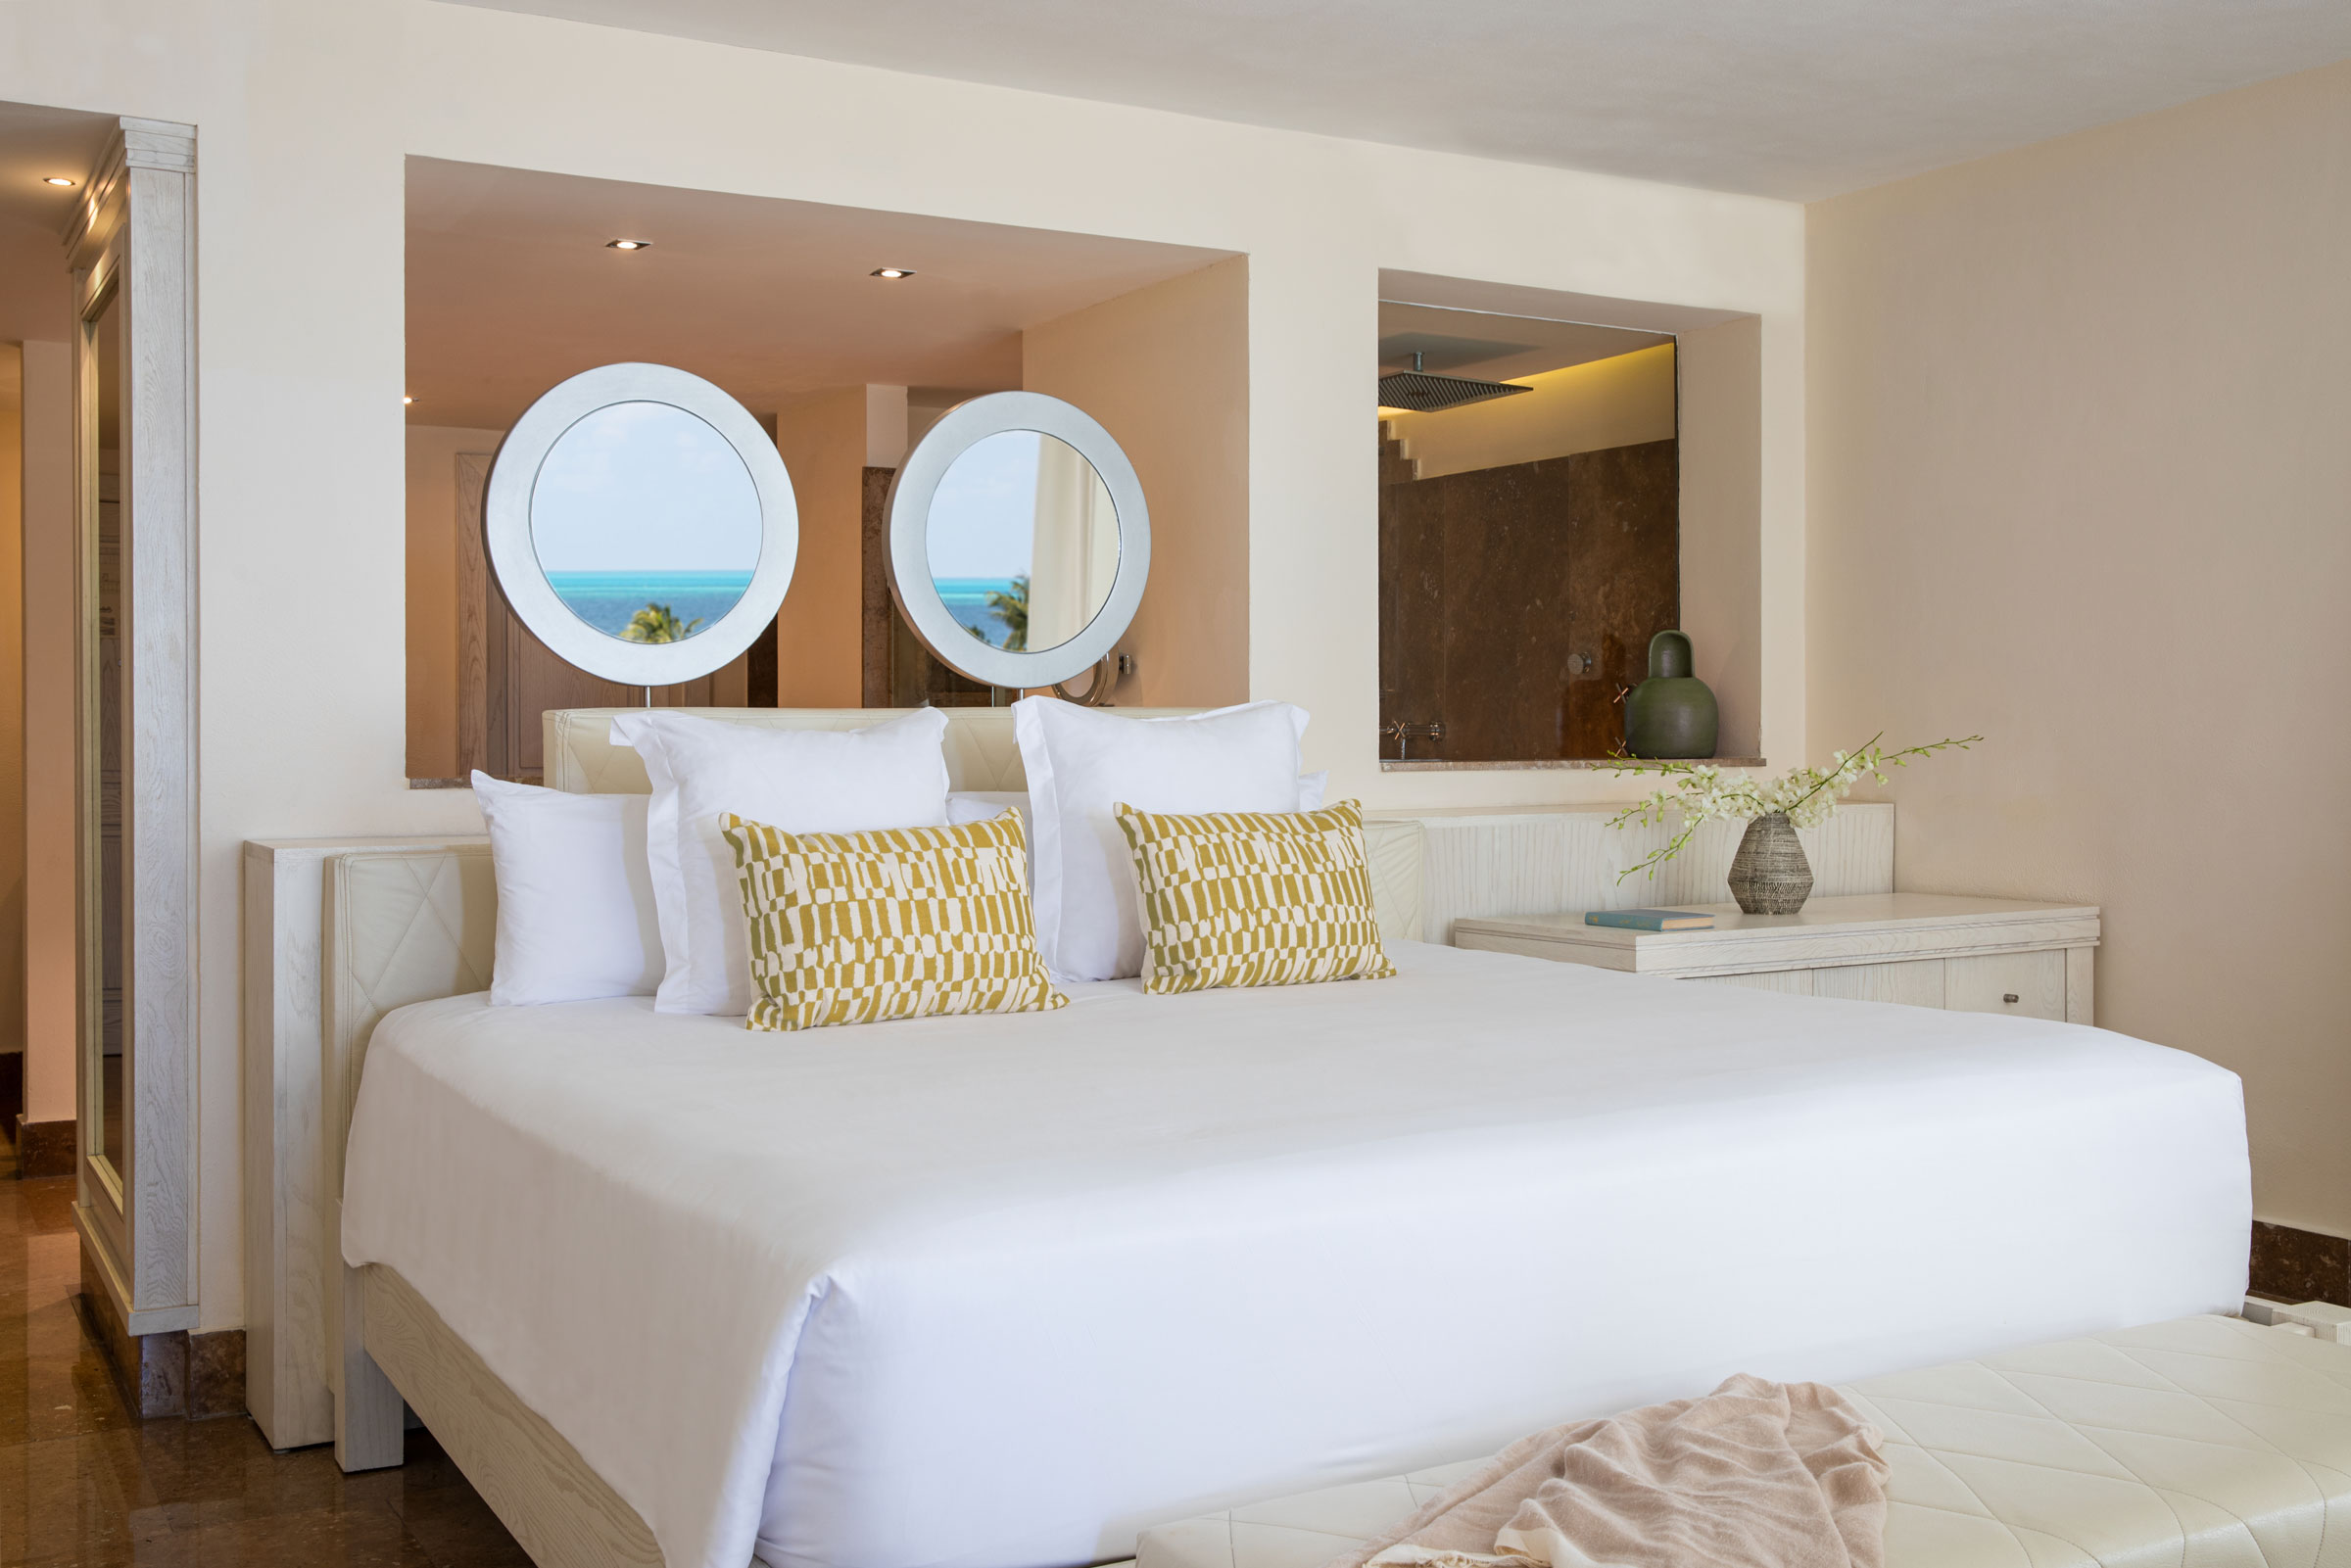  Hôtel pour couples à Cancún avec suite romantique